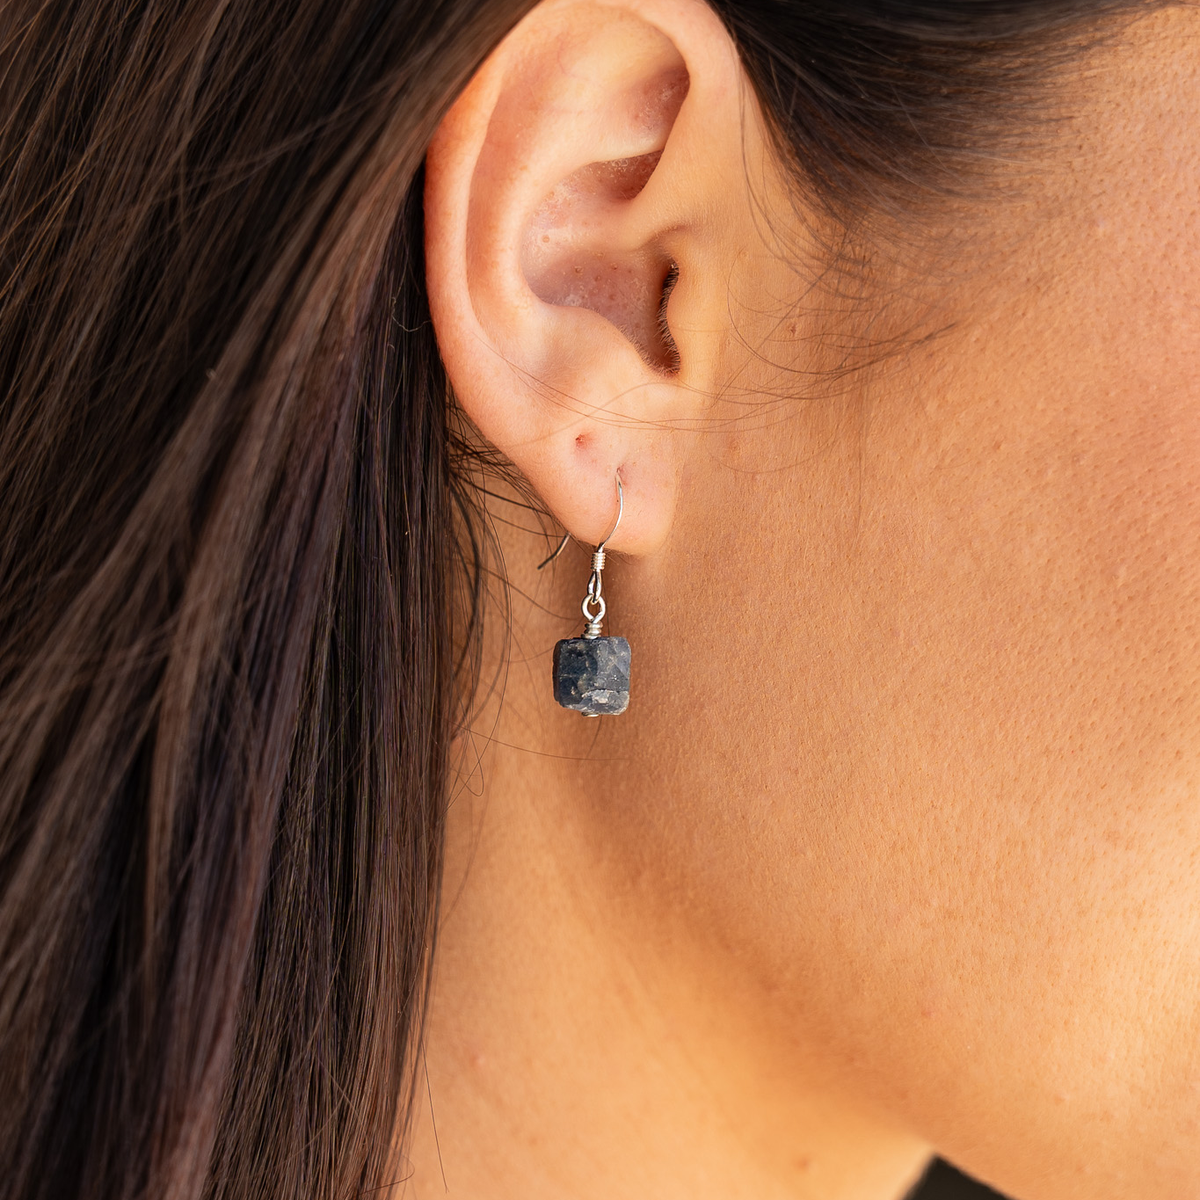 Raw Blue Sapphire Crystal Dangle Drop Earrings